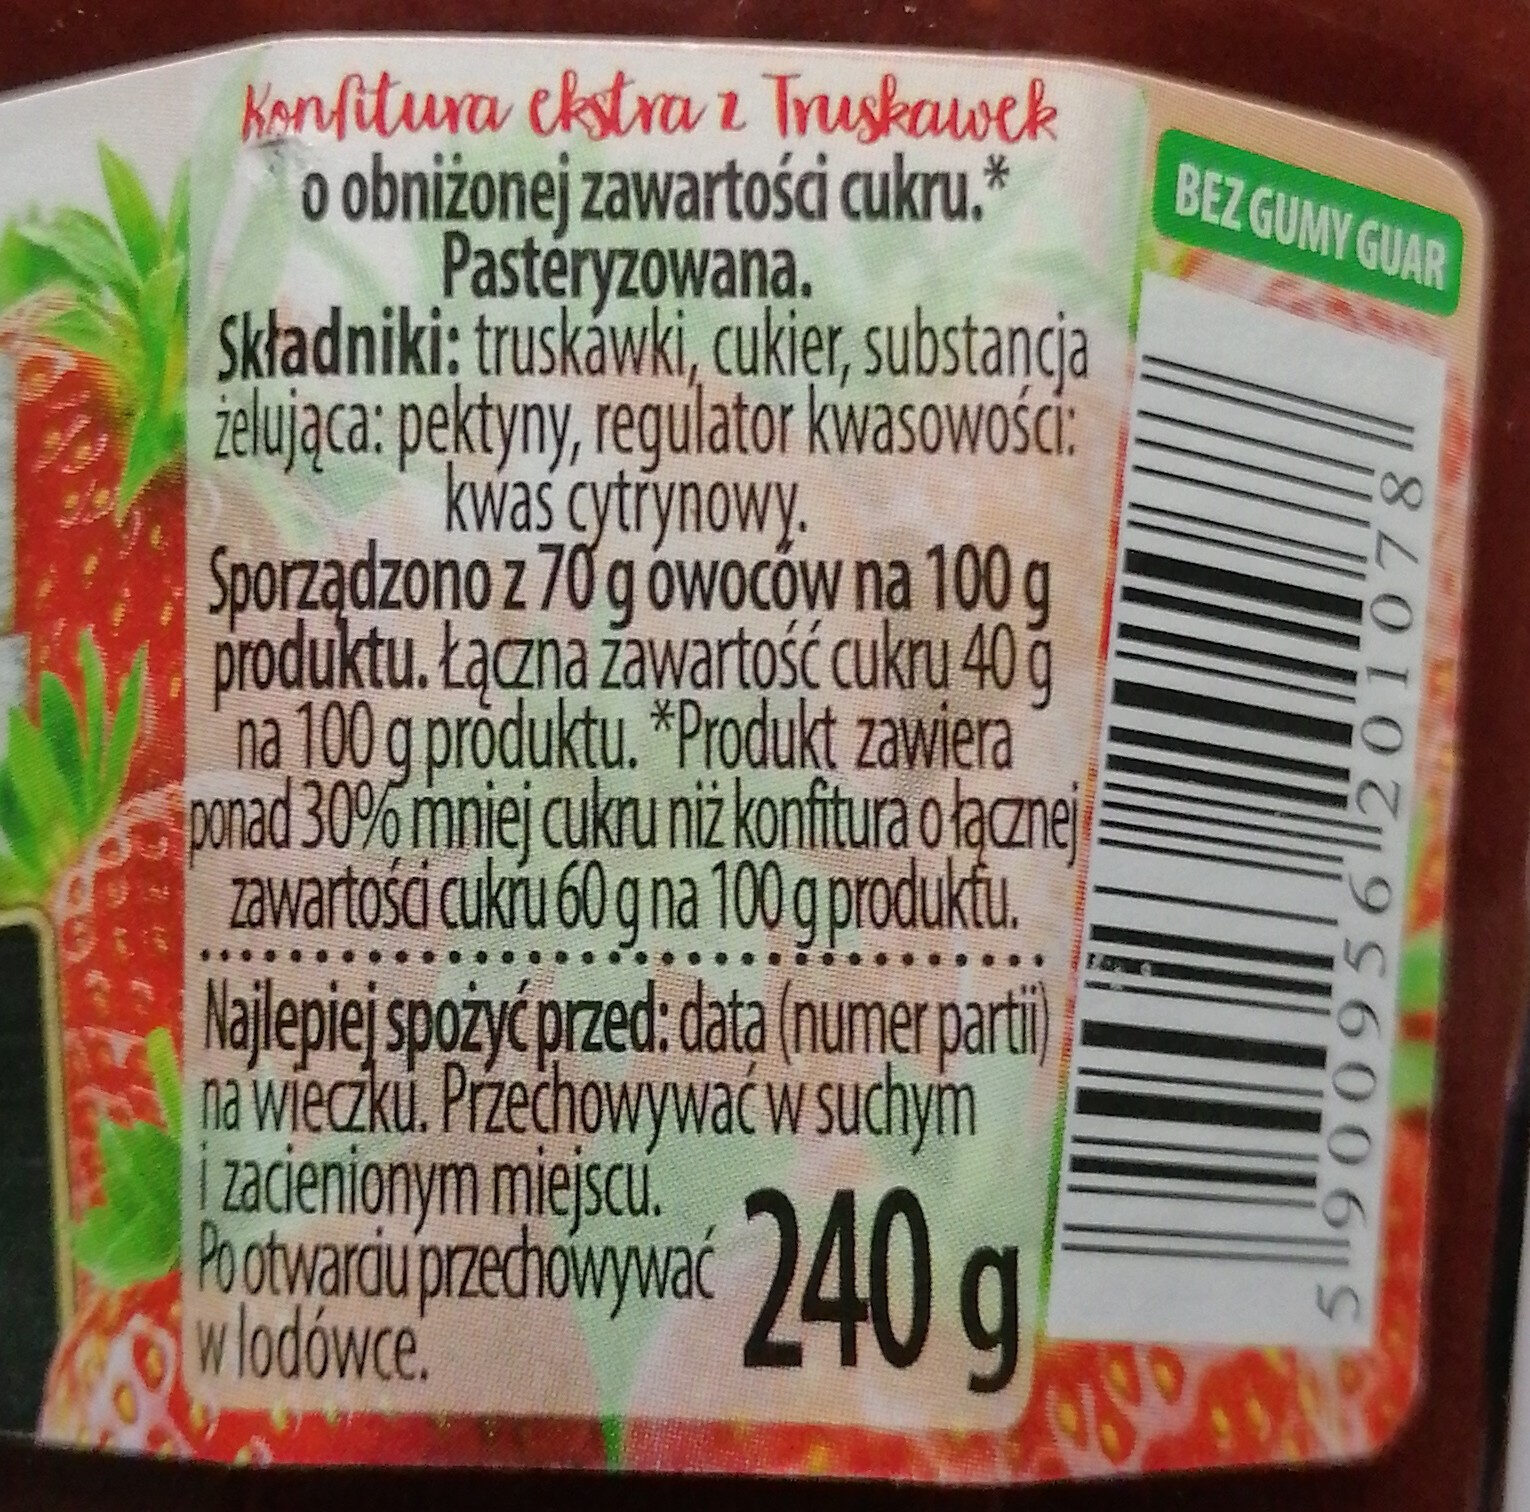 Konfitura ekstra z truskawek o obniżonej zawartości cukru. - Ingredients - pl